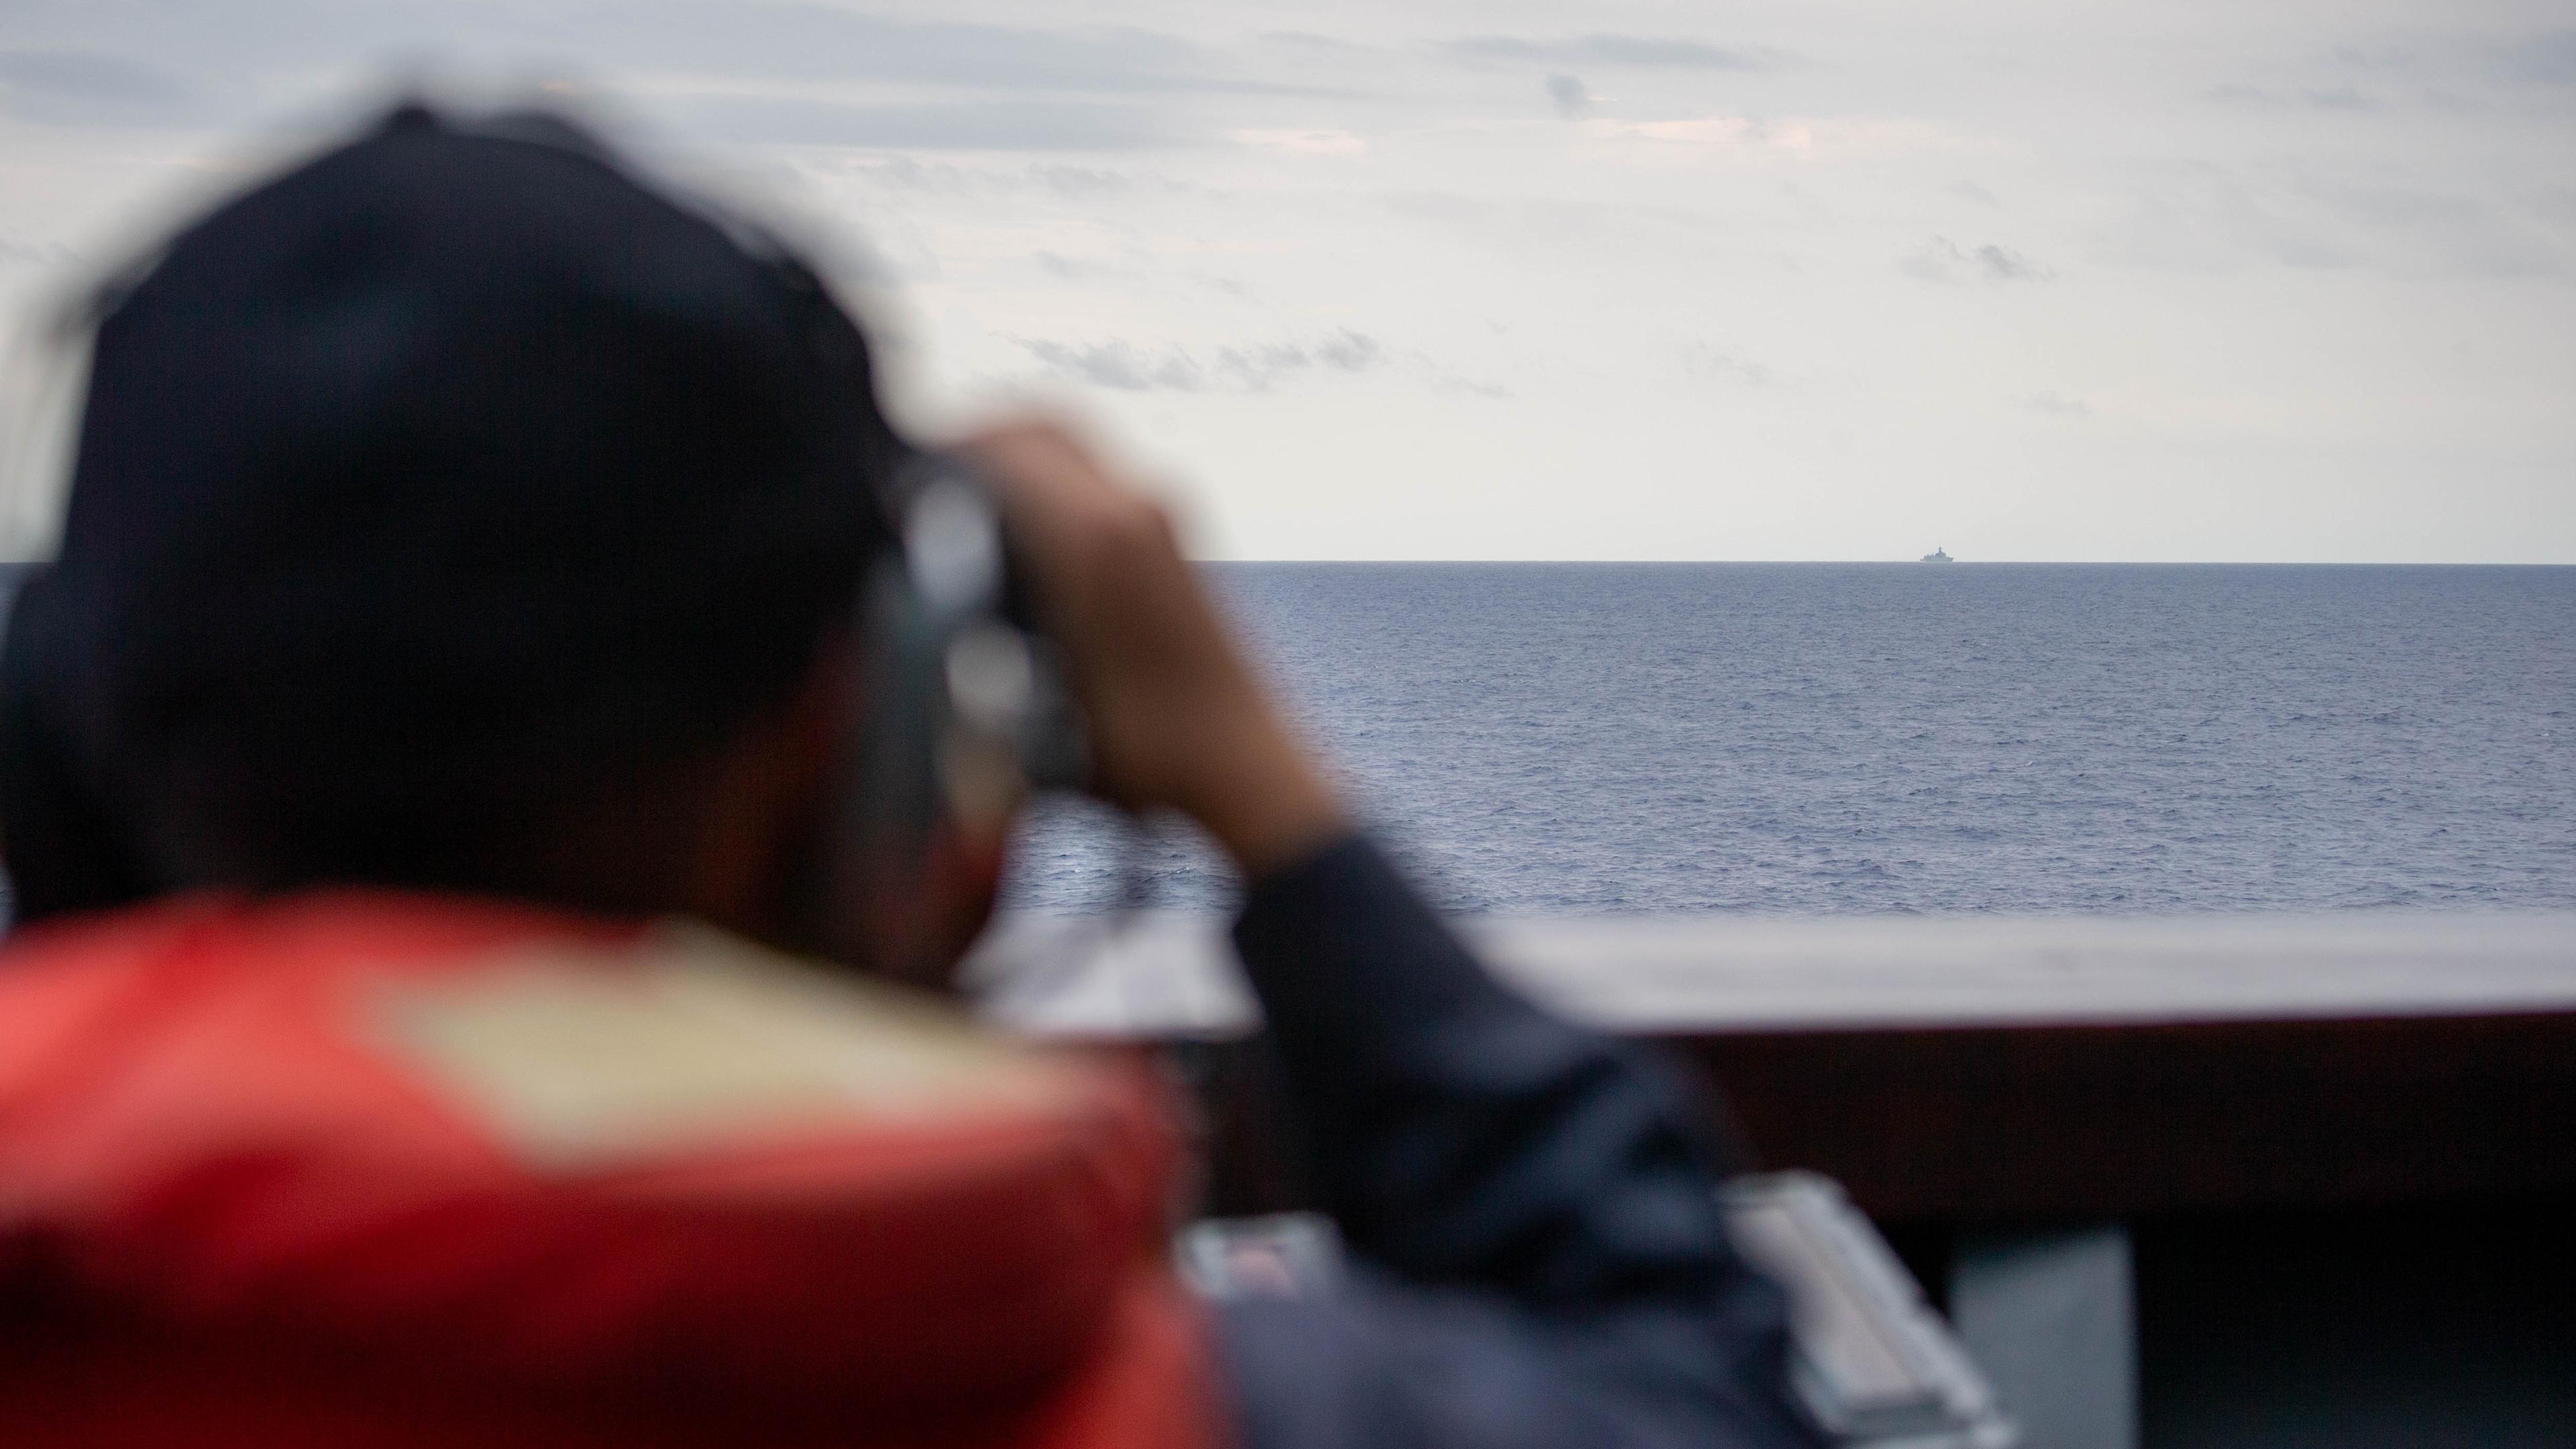 Taiwanische Marine beobachtet chinesisches Manöver um die Inselrepublik